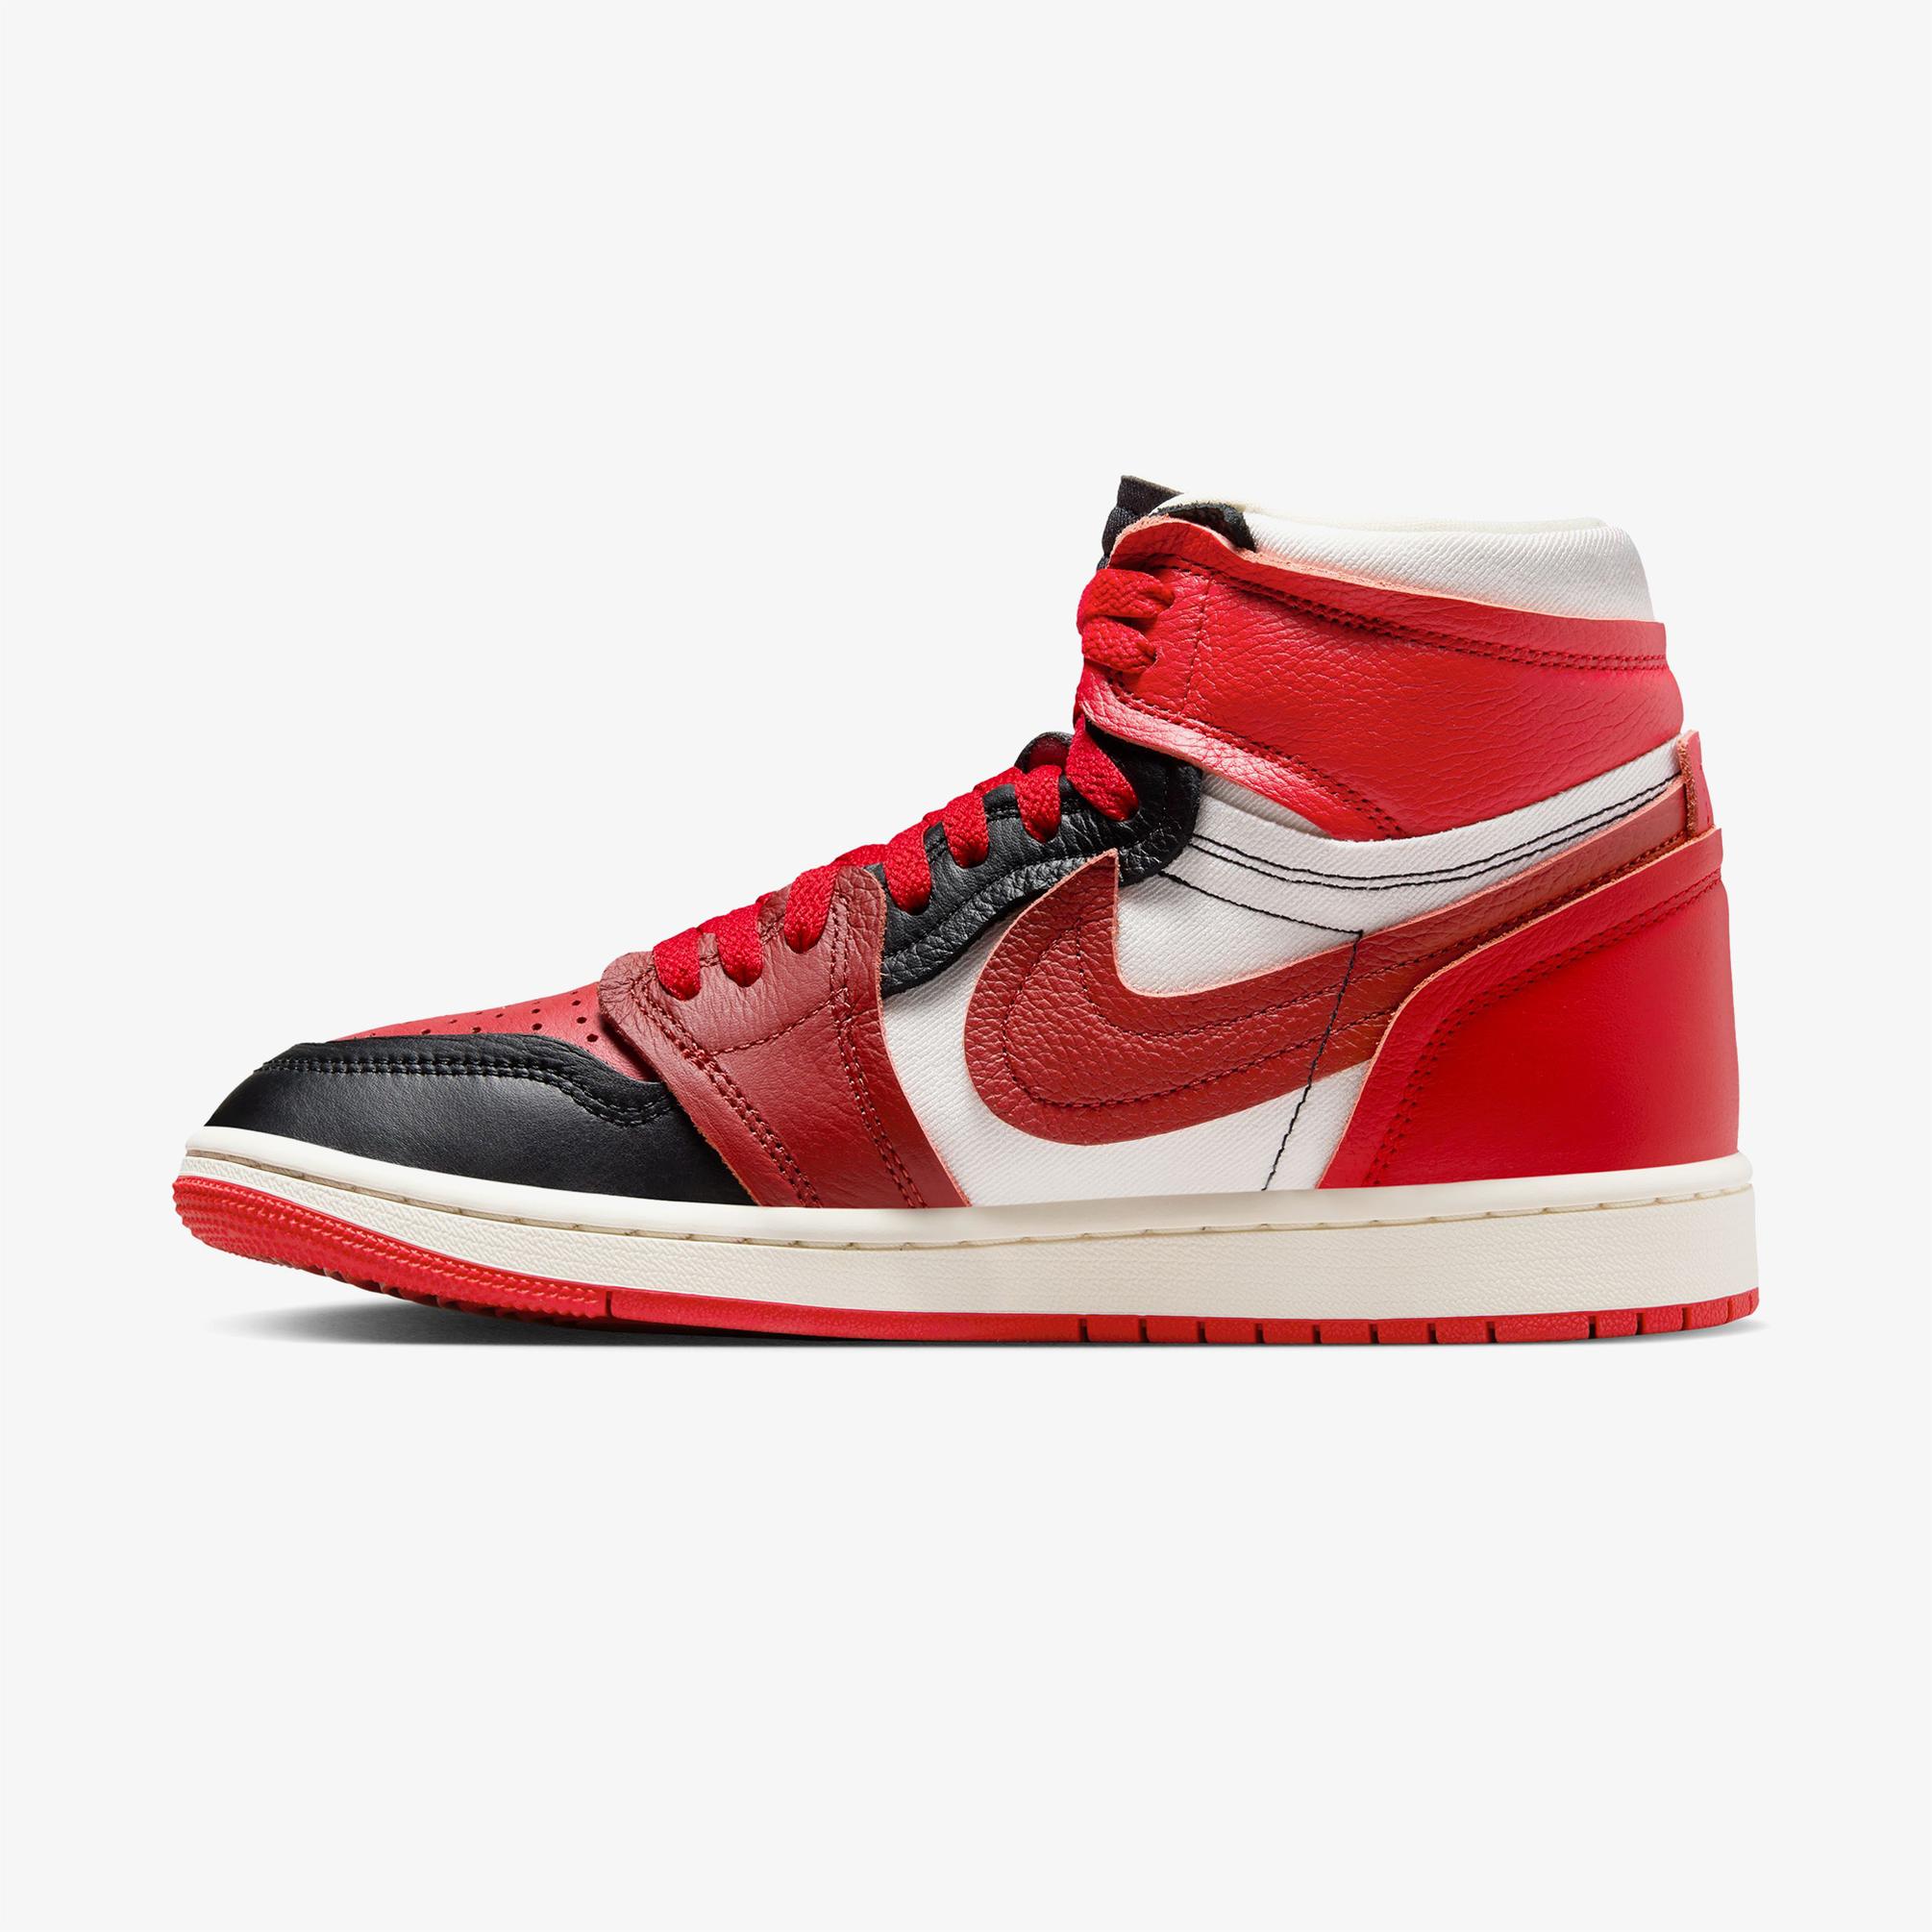  Jordan Air 1 High MM Kadın Kırmızı/Pembe Spor Ayakkabı